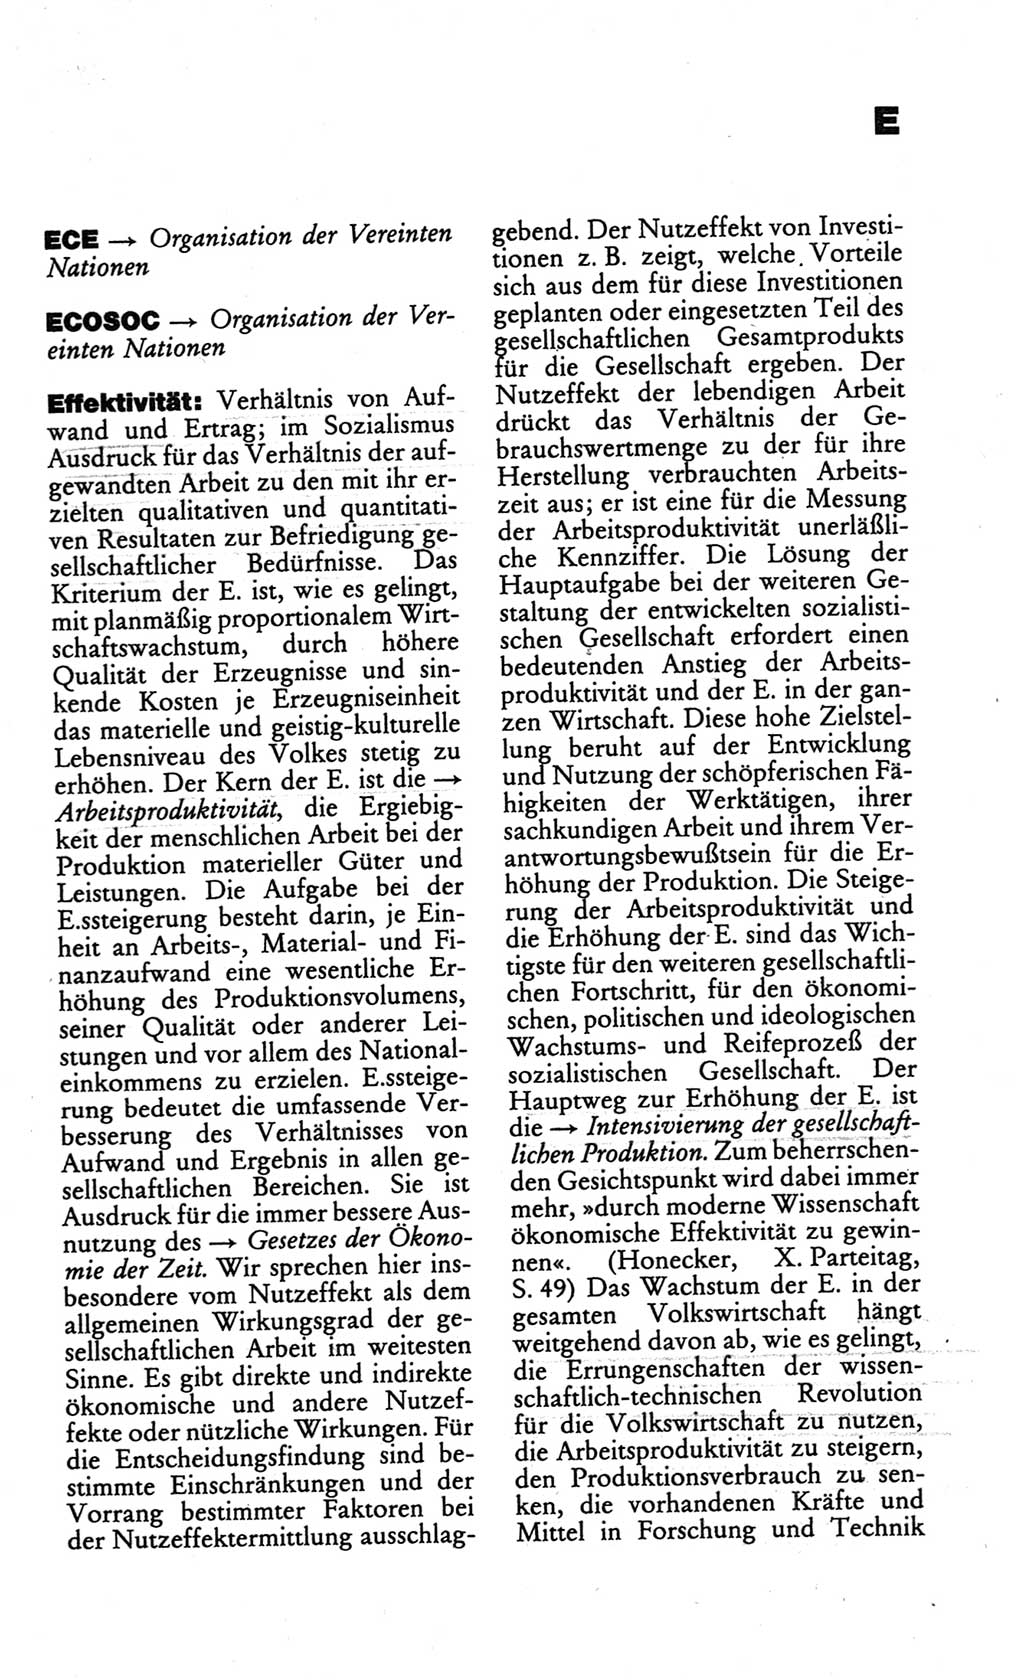 Kleines politisches Wörterbuch [Deutsche Demokratische Republik (DDR)] 1986, Seite 203 (Kl. pol. Wb. DDR 1986, S. 203)